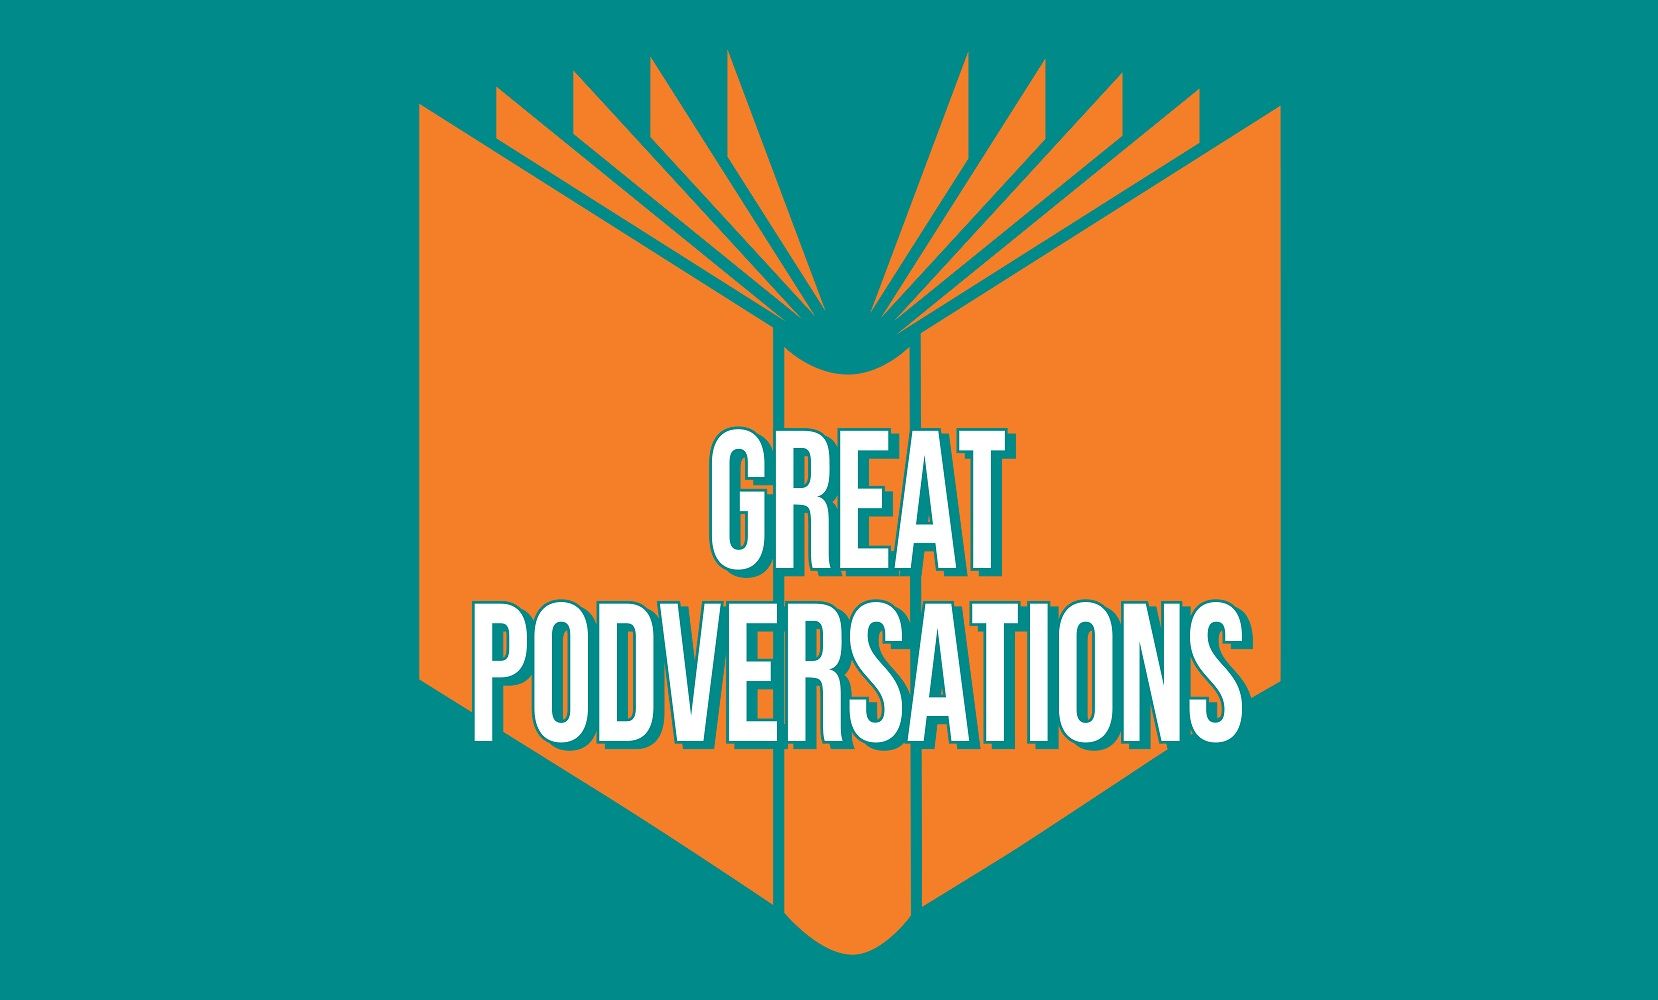 Kentucky Author Forum Presents Great Podversations